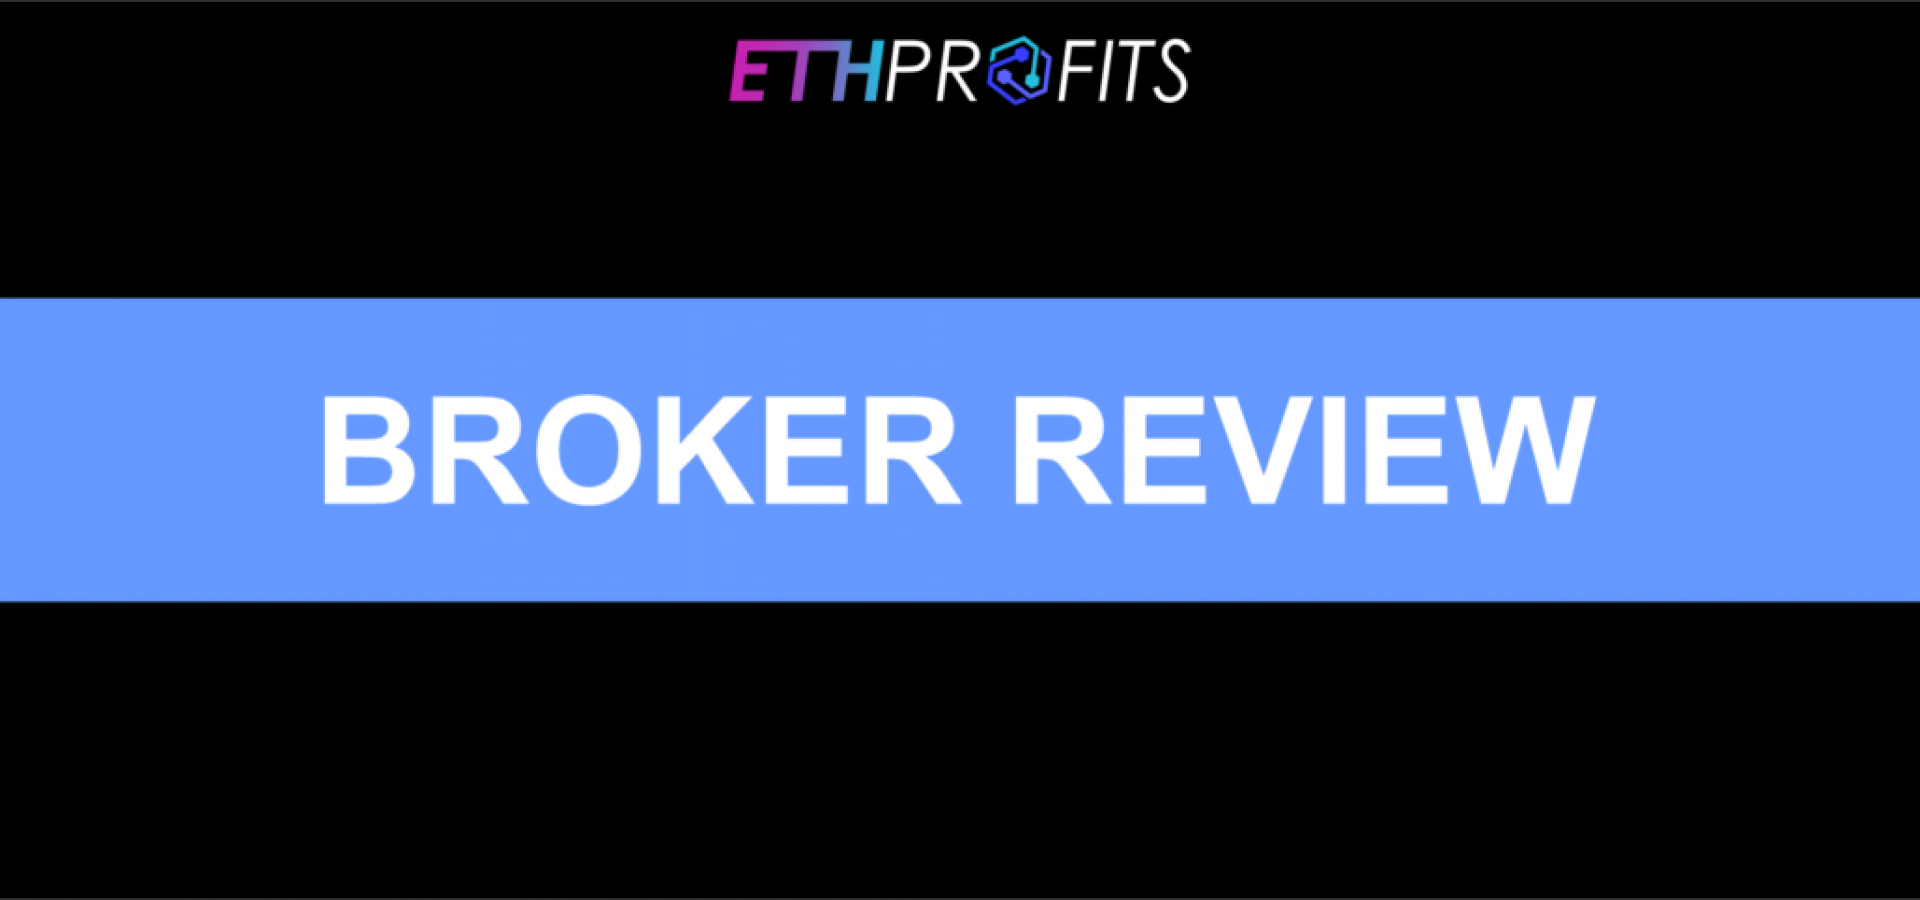 ETH Profits Review